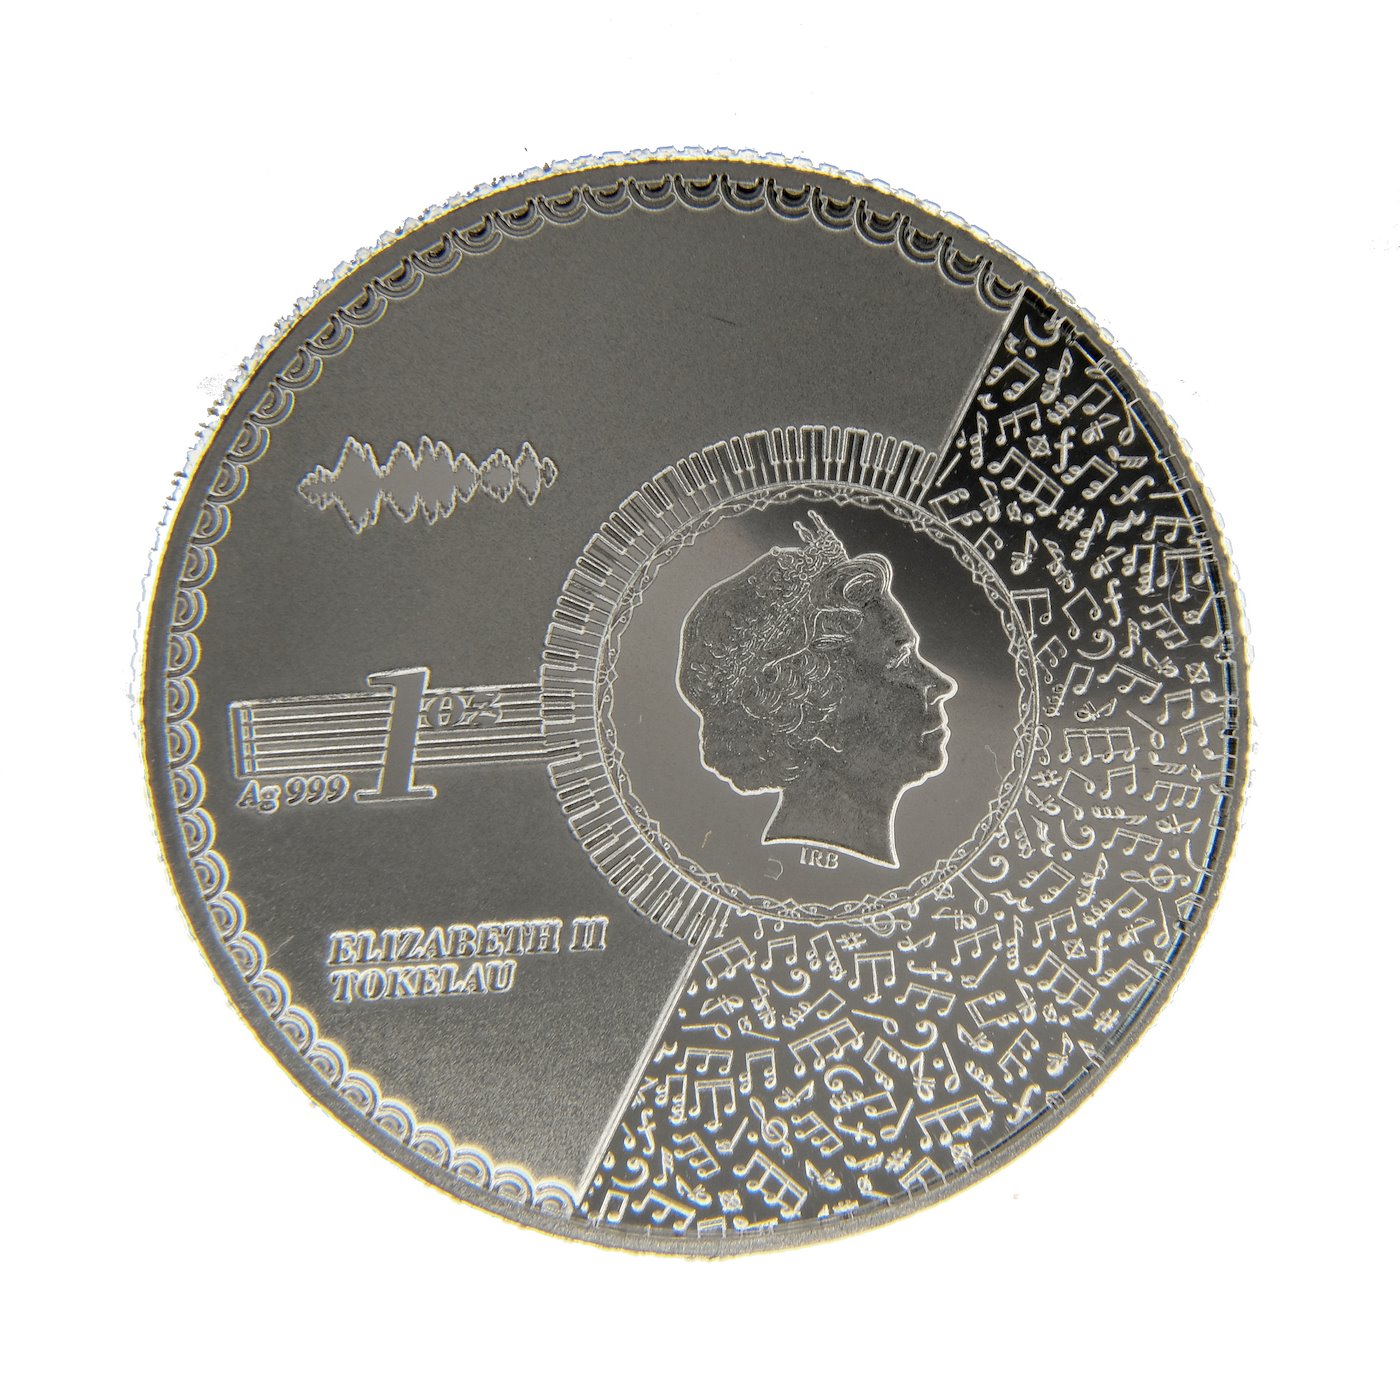 .. - Tokelau 2021 1 unce stříbrná mince VIVAT HUMANITAS PROOF, stříbro 999/1000, hrubá hmotnost 31,1g.